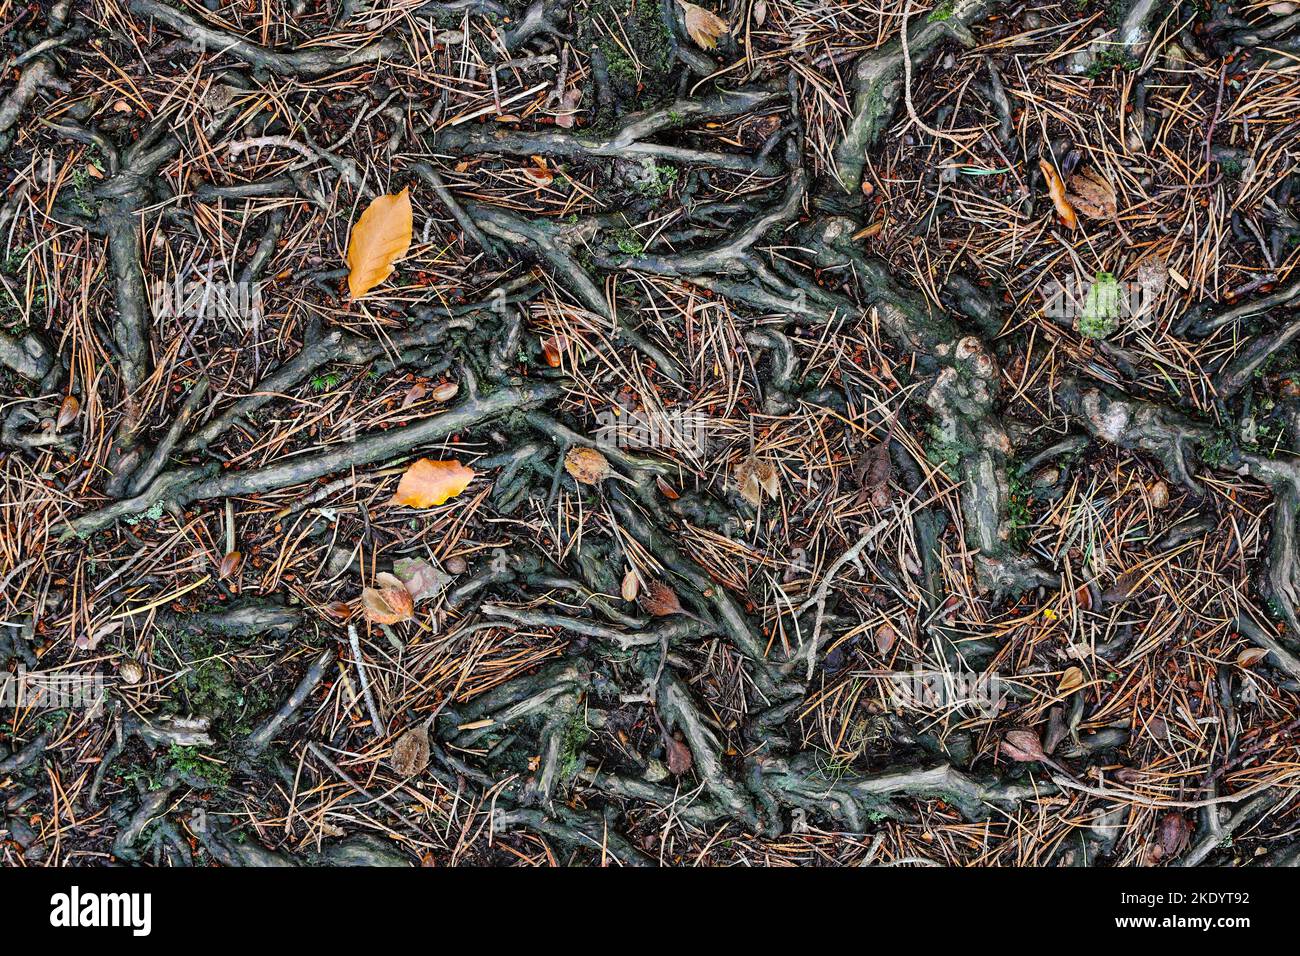 Zusammenfassung einer Mischart Waldboden mit Wurzeln, Schotten Tannenzapfen und Nadeln, zusammen mit Laub Buche Blätter und Beach Mast Seeds, Teesdale, Stockfoto